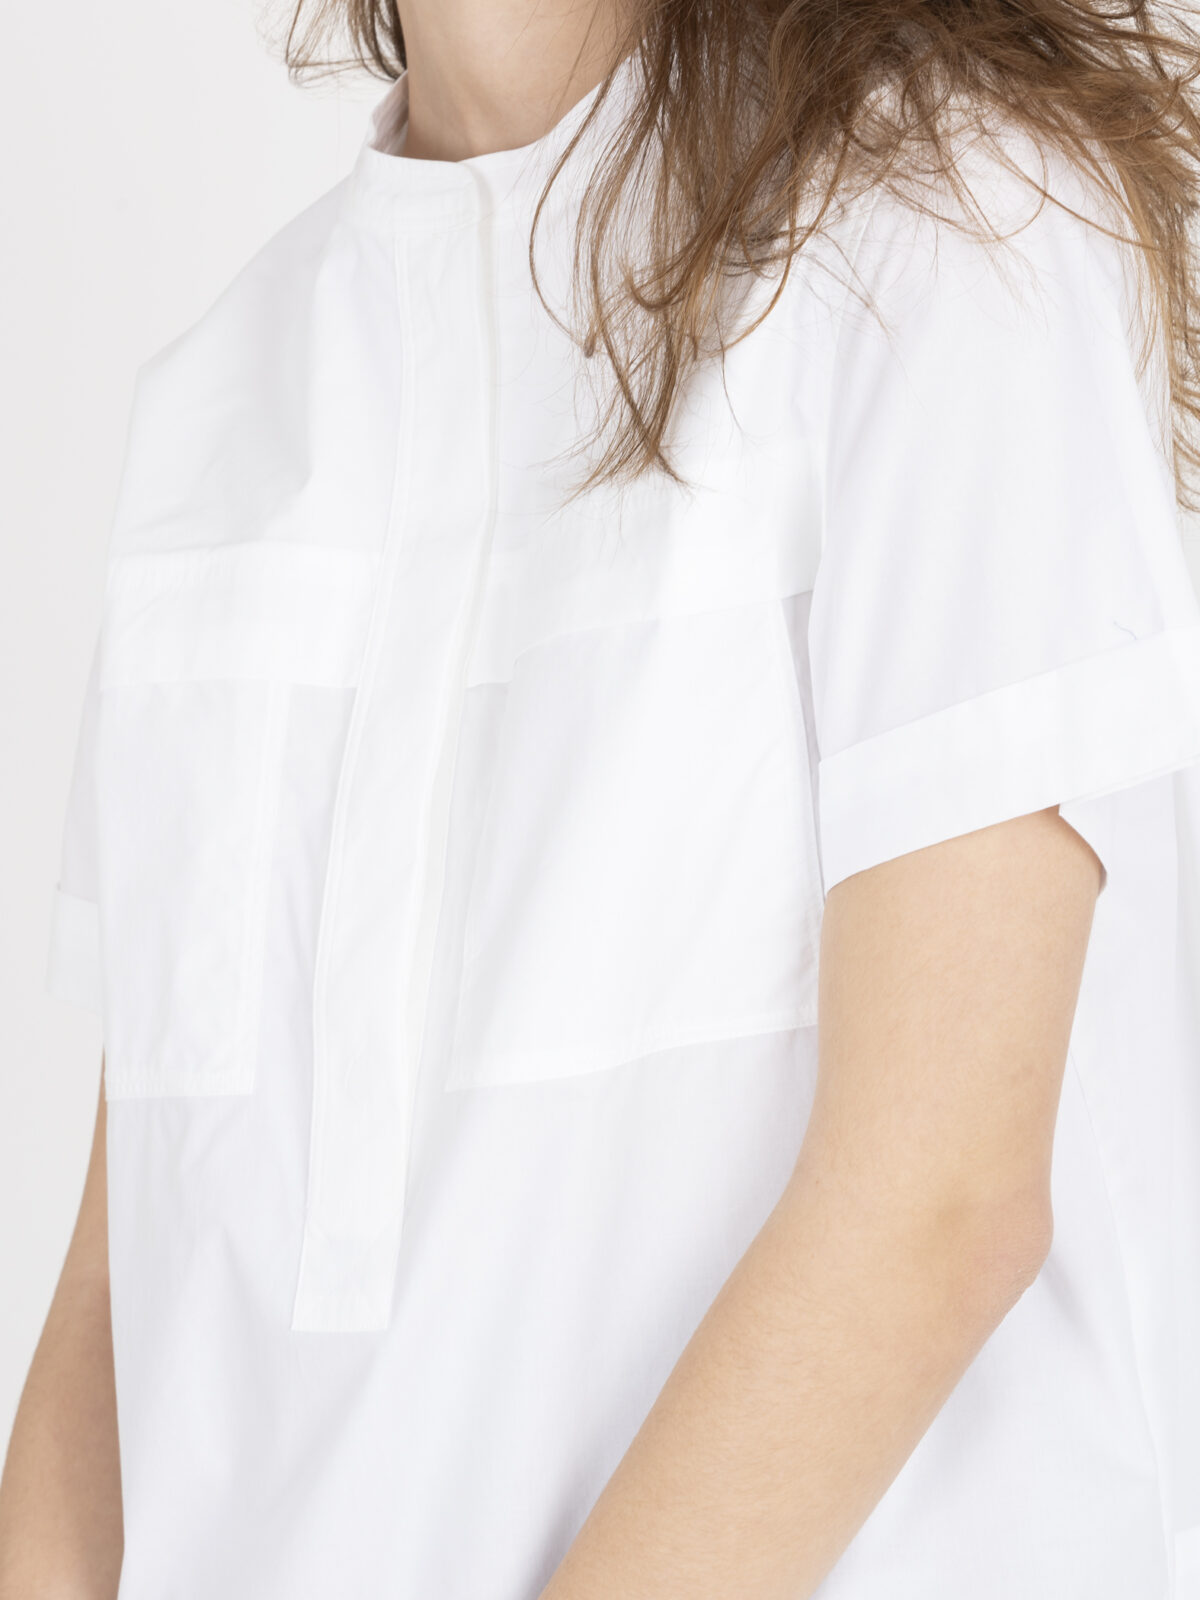 tegan-white-shirt-wide-round-collar-crisp-cotton-soeur-matchboxathens